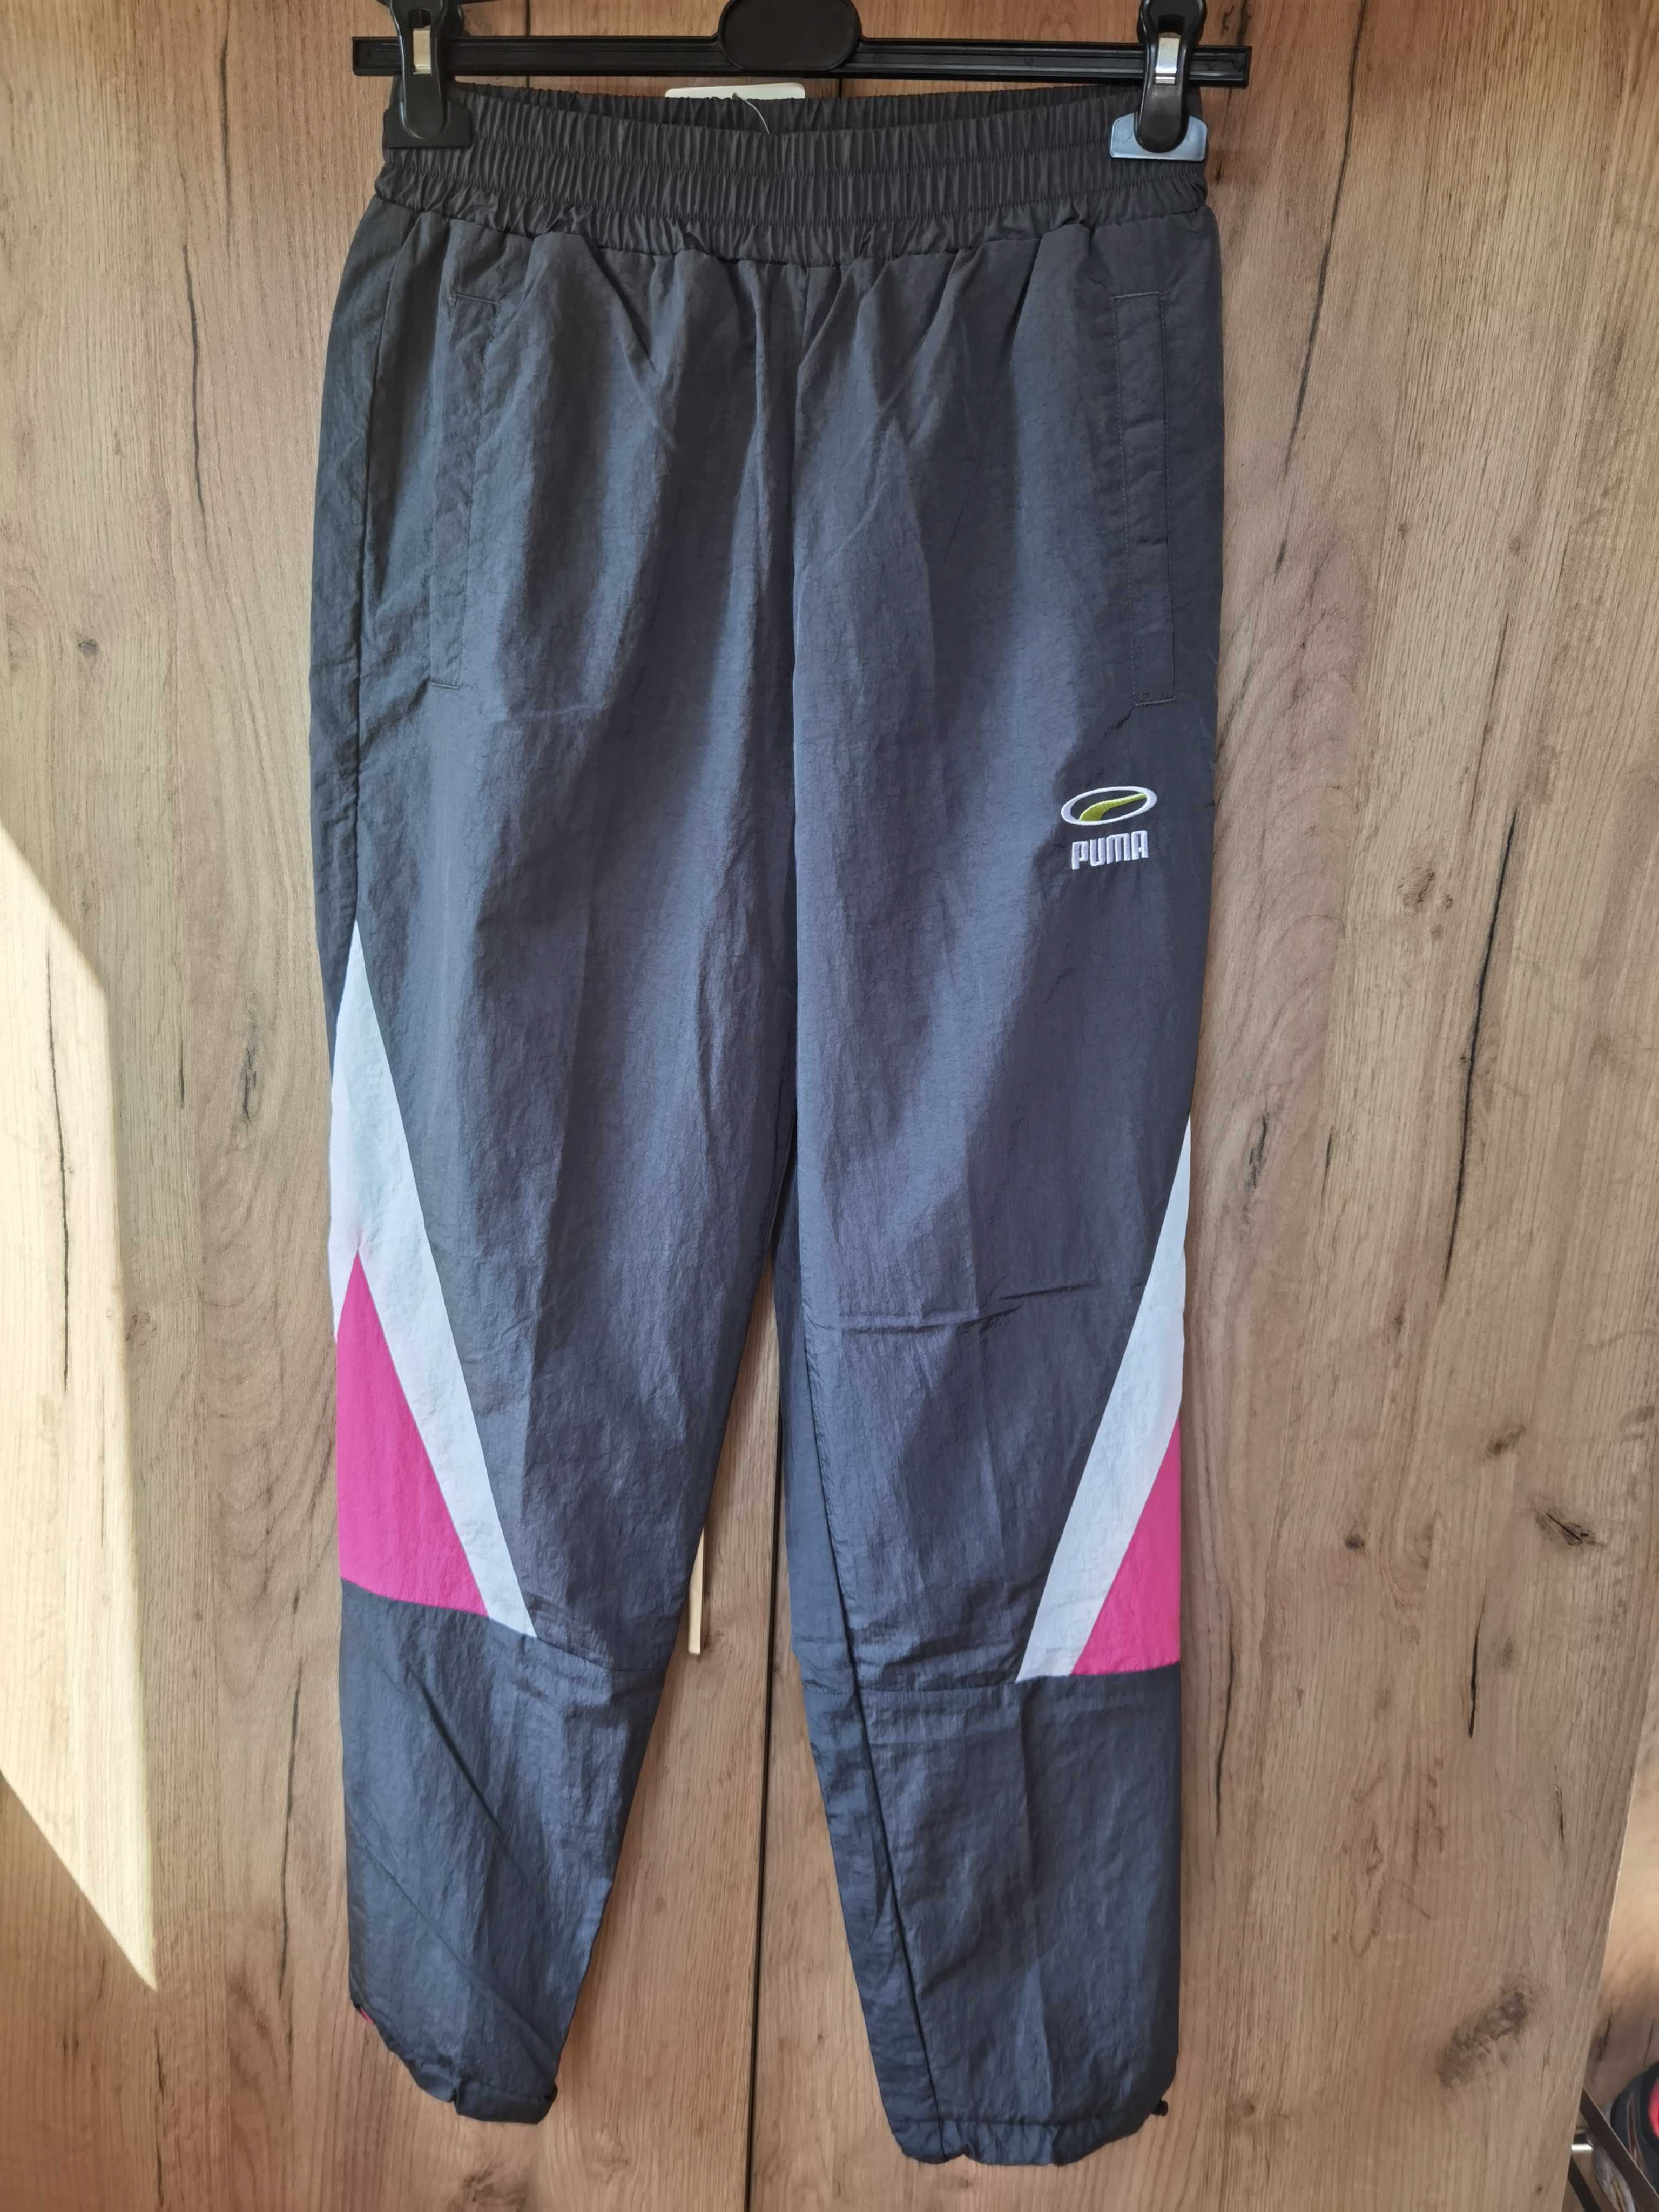 Spodnie sportowe pantalony Puma, rozmiar S, nowe z metką, kieszenie